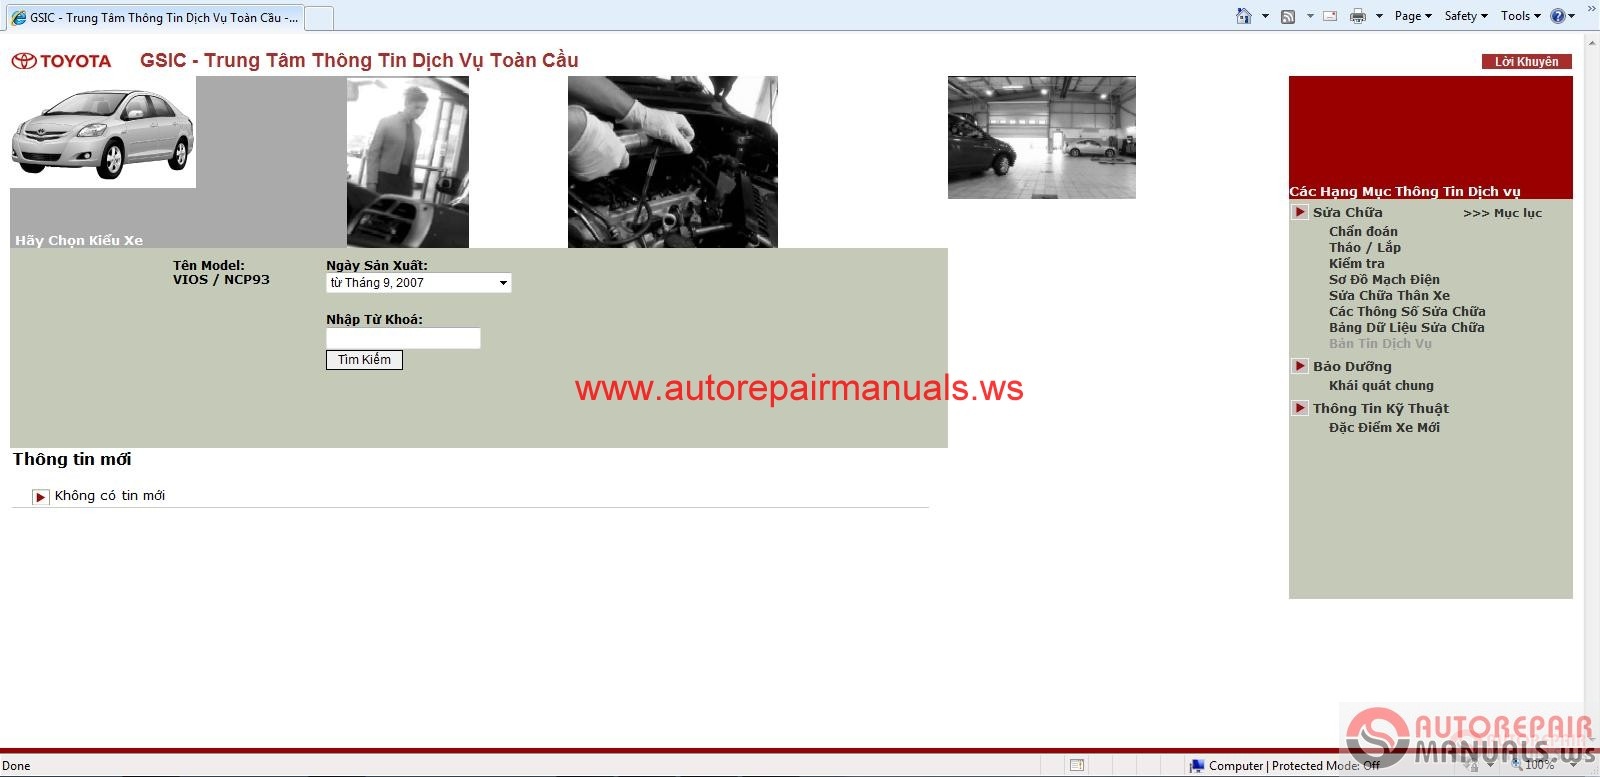 Toyota Vios 2007 Workshop Manual | Auto Repair Manual ...